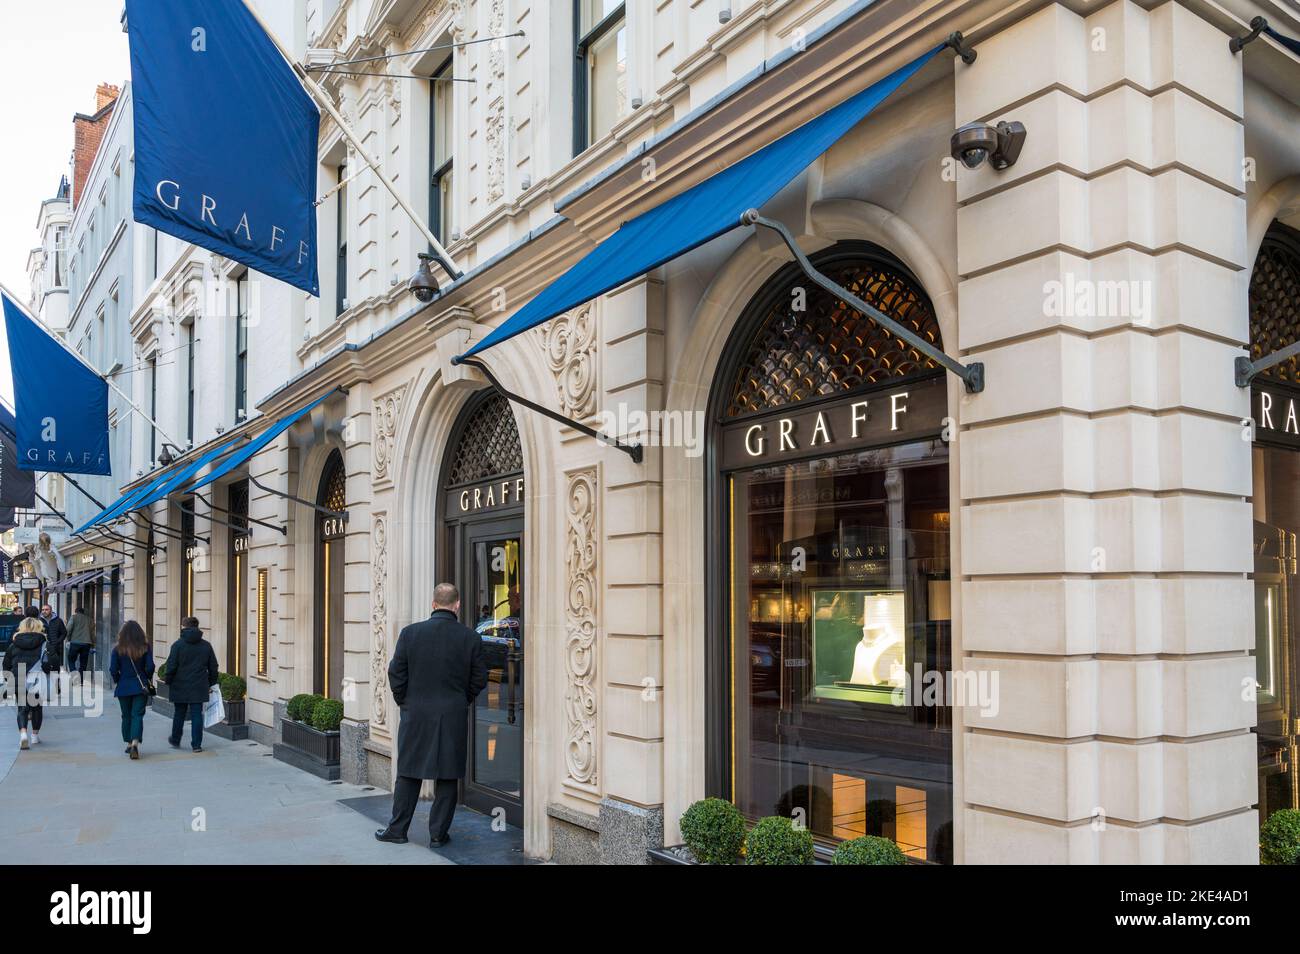 Außenansicht des Graff Stores, einer Luxusschmuckmarke, die auf Diamanten, Edelsteine und kunstvolle Zeitmesser spezialisiert ist. New Bond Street, London, England, Großbritannien Stockfoto